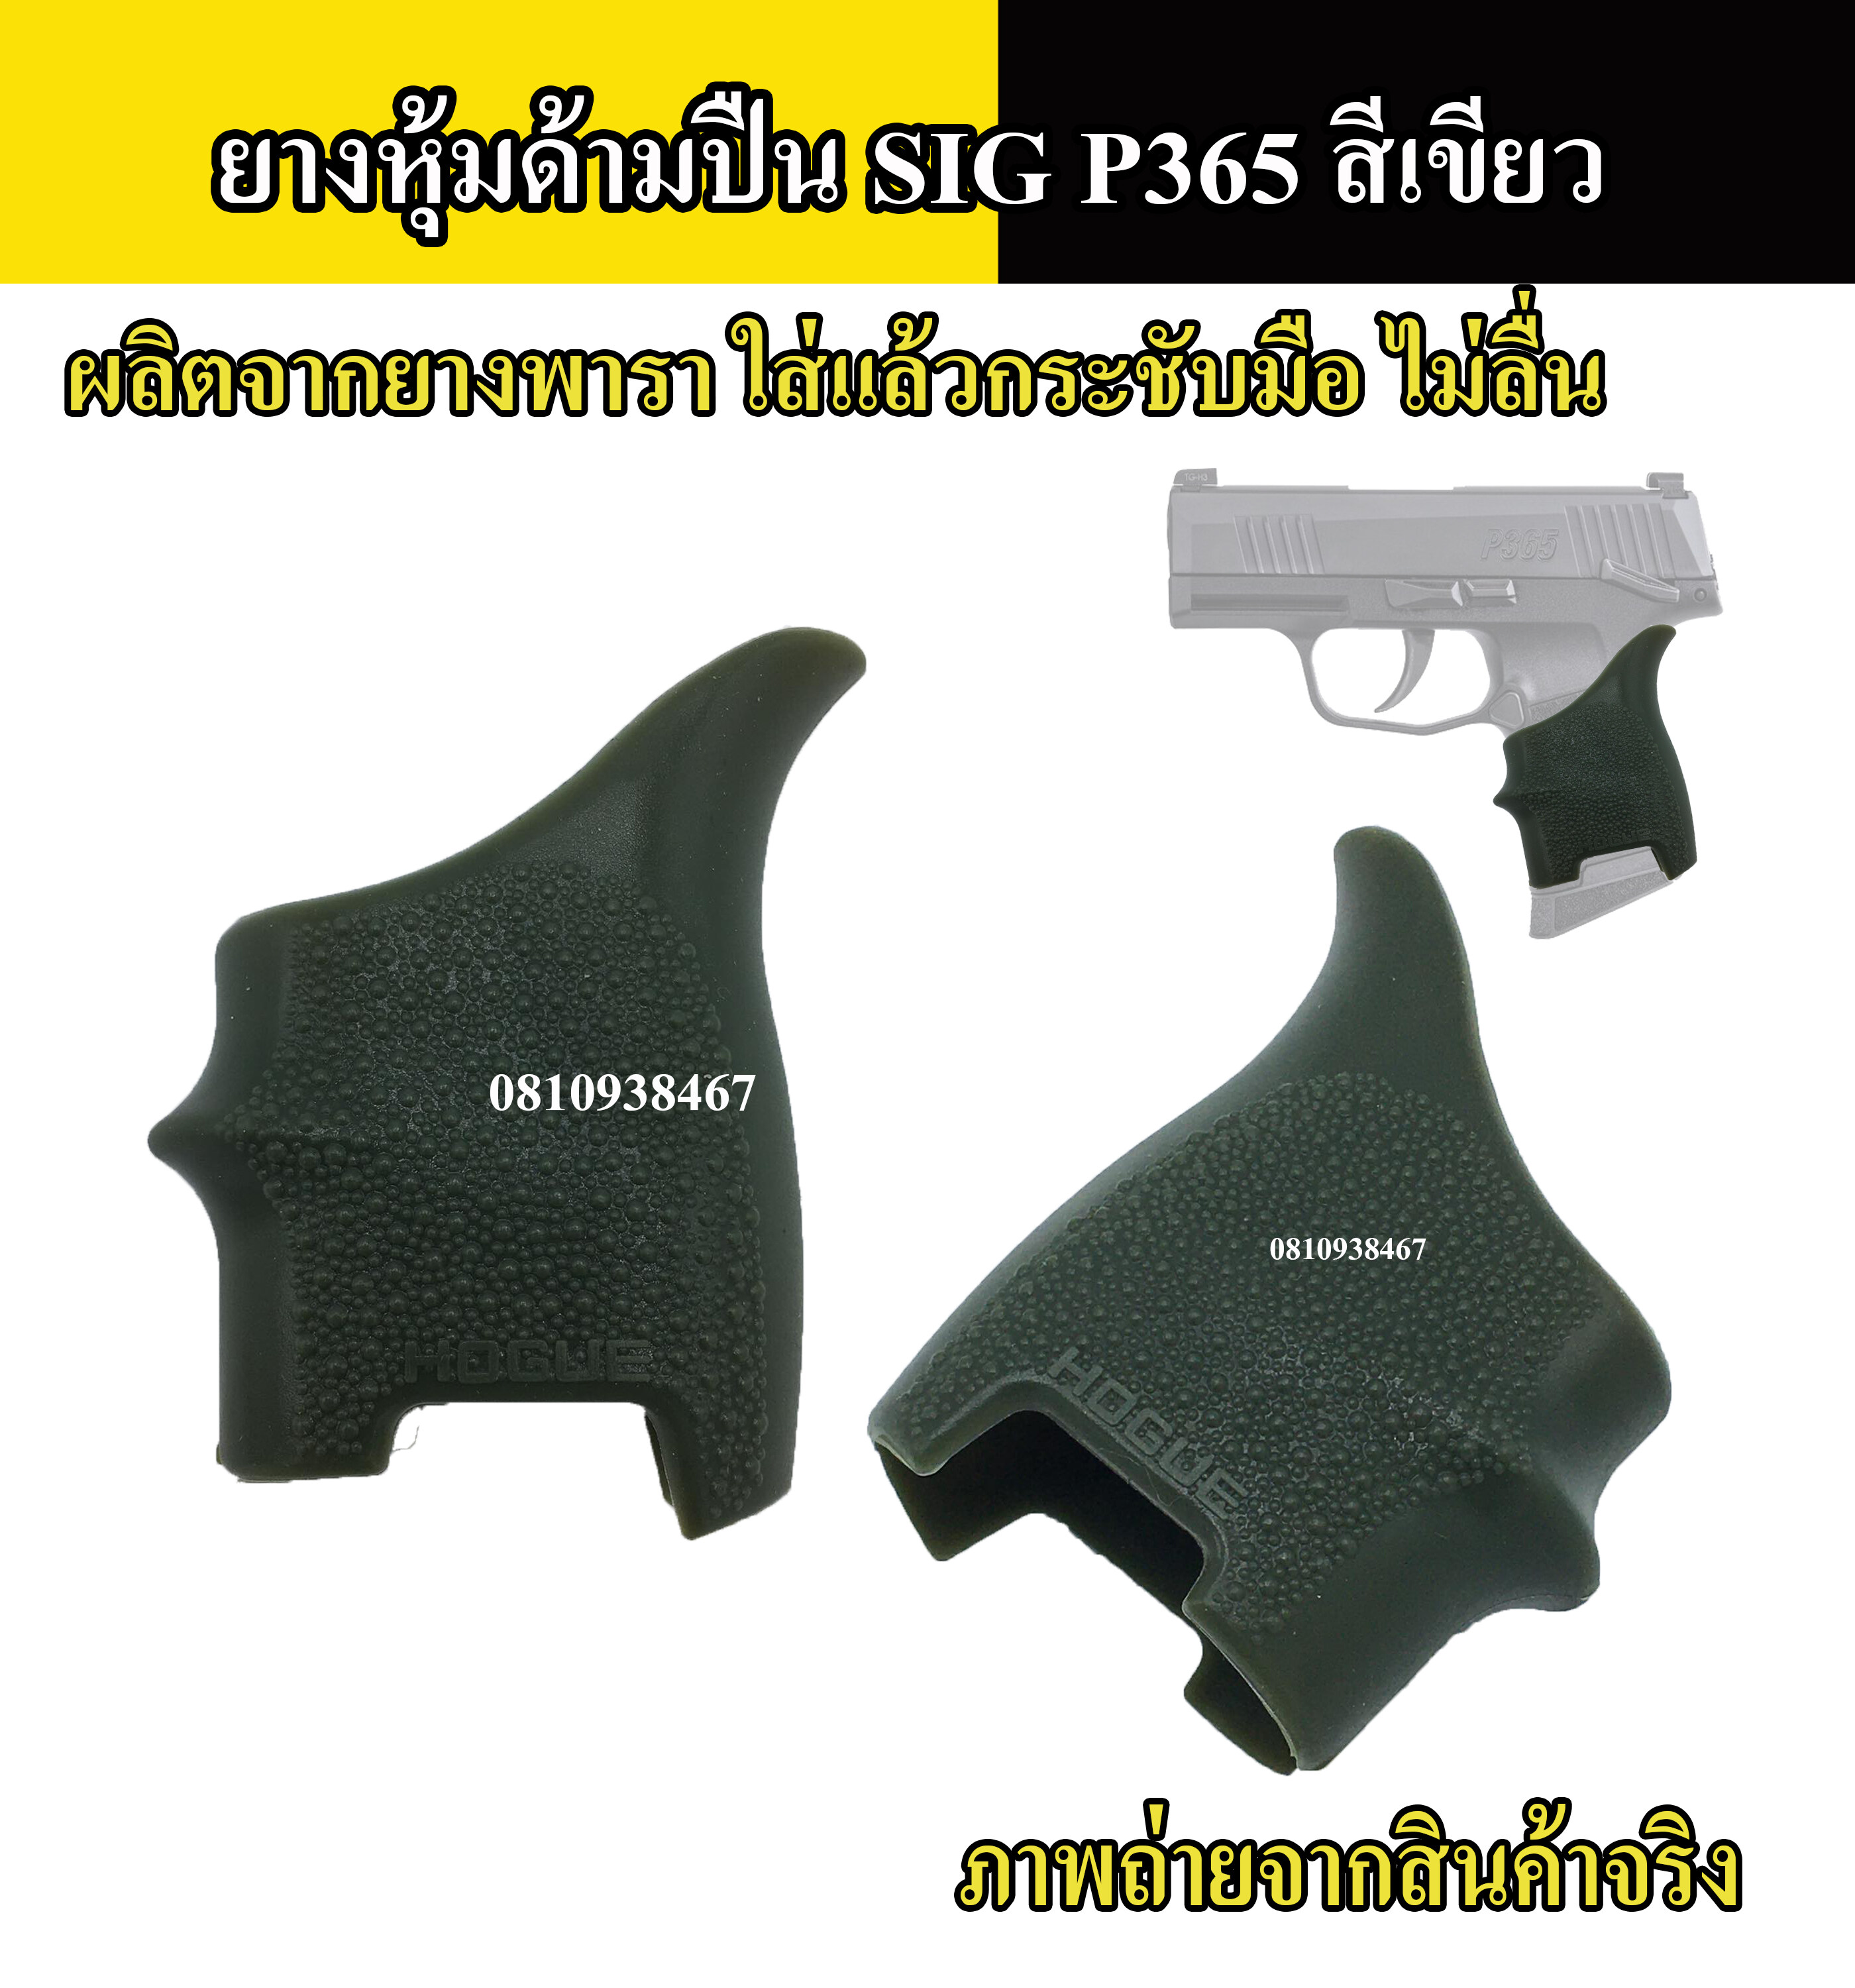 ยางหุ้มด้ามปืน SIG P365 กันลื่น สีดำ สีทราย สีเขียว Grips ปืนสั้นรุ่นสำหรับ ปืนสั้น SIG P 365 tactical grip glove gloc